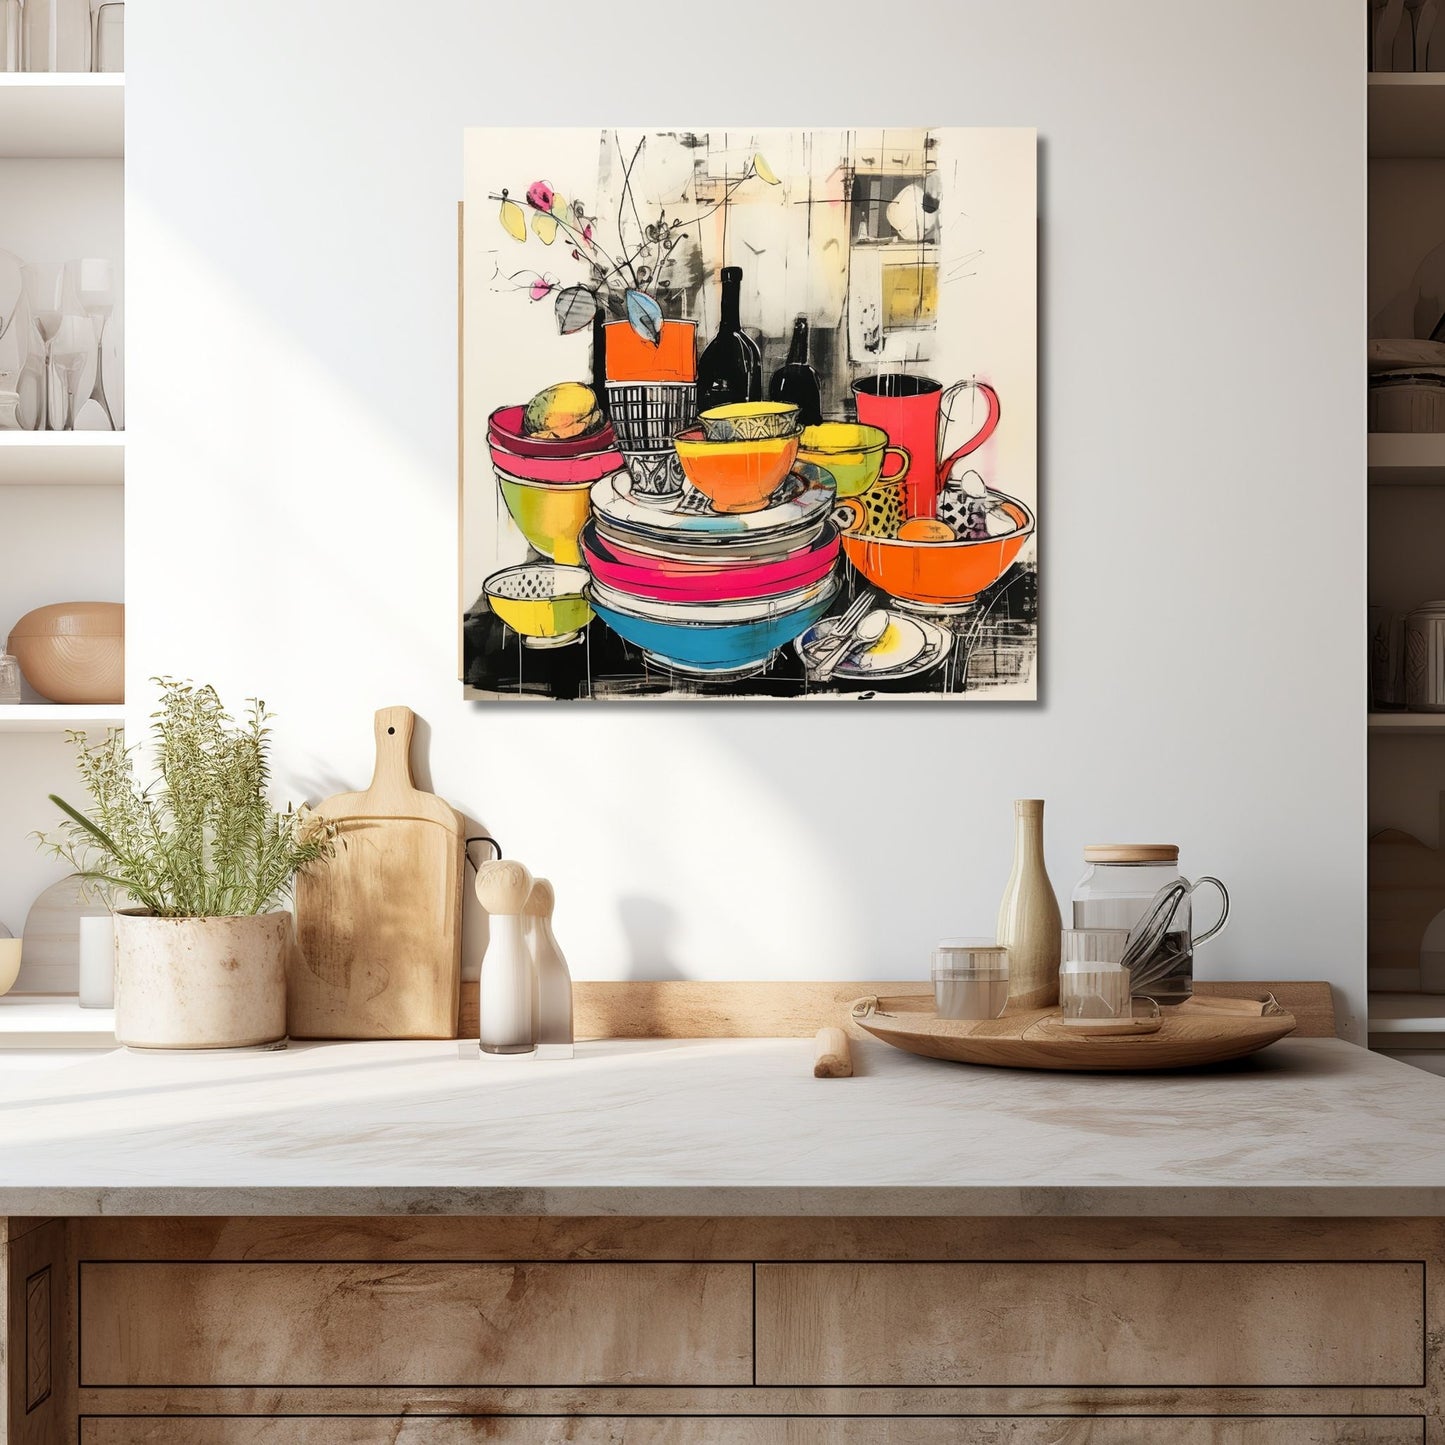 Drawn Kitchen Art plakat og lerret viser et herlig borddekor med skåler og tallerkener i en levende og fargerik stil. Illustrasjonen viser motivet på lerret som henger over en kjøkkenbenk.